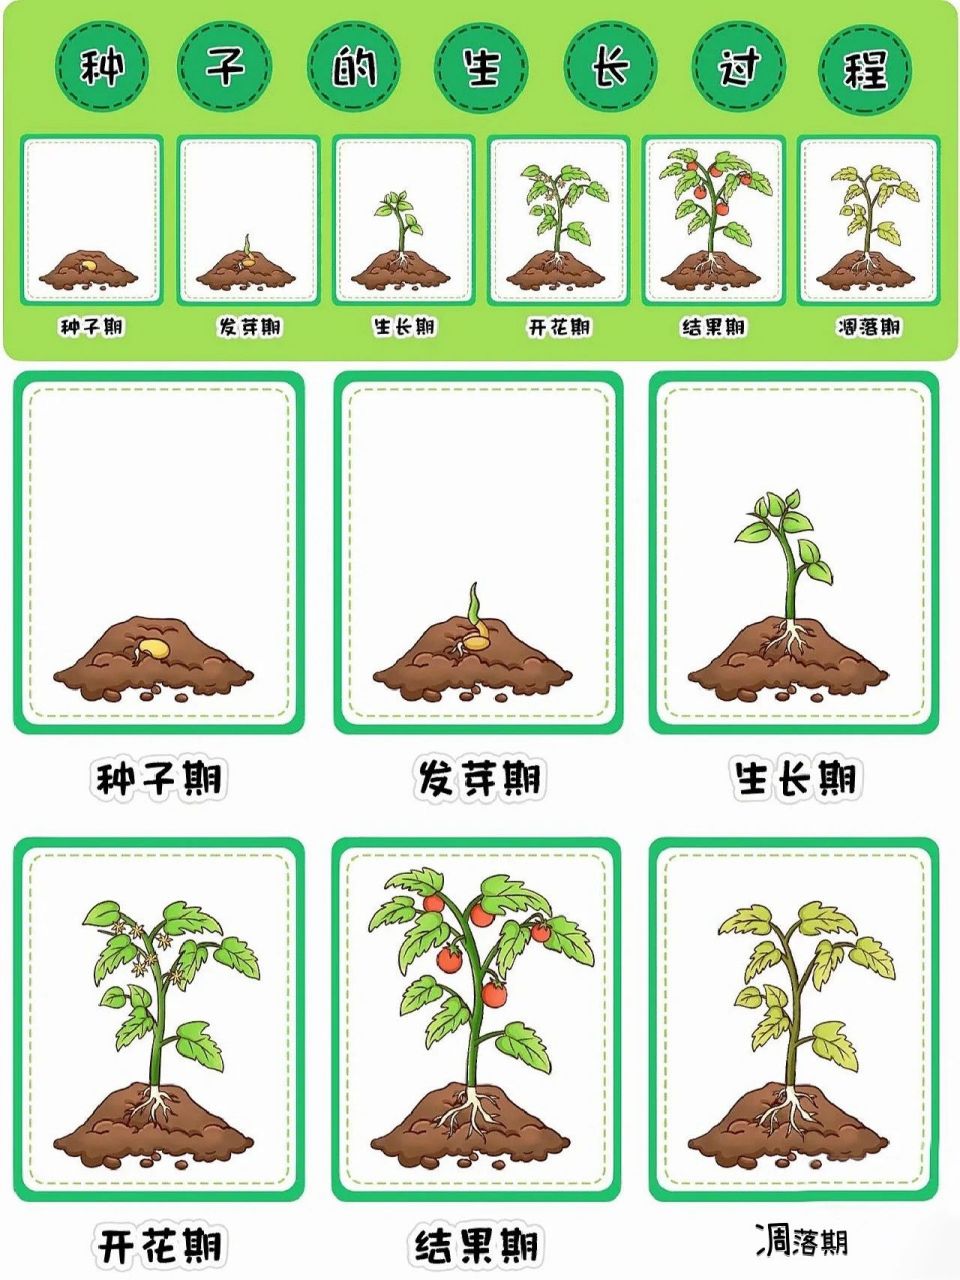 种子的生长过程教案图片